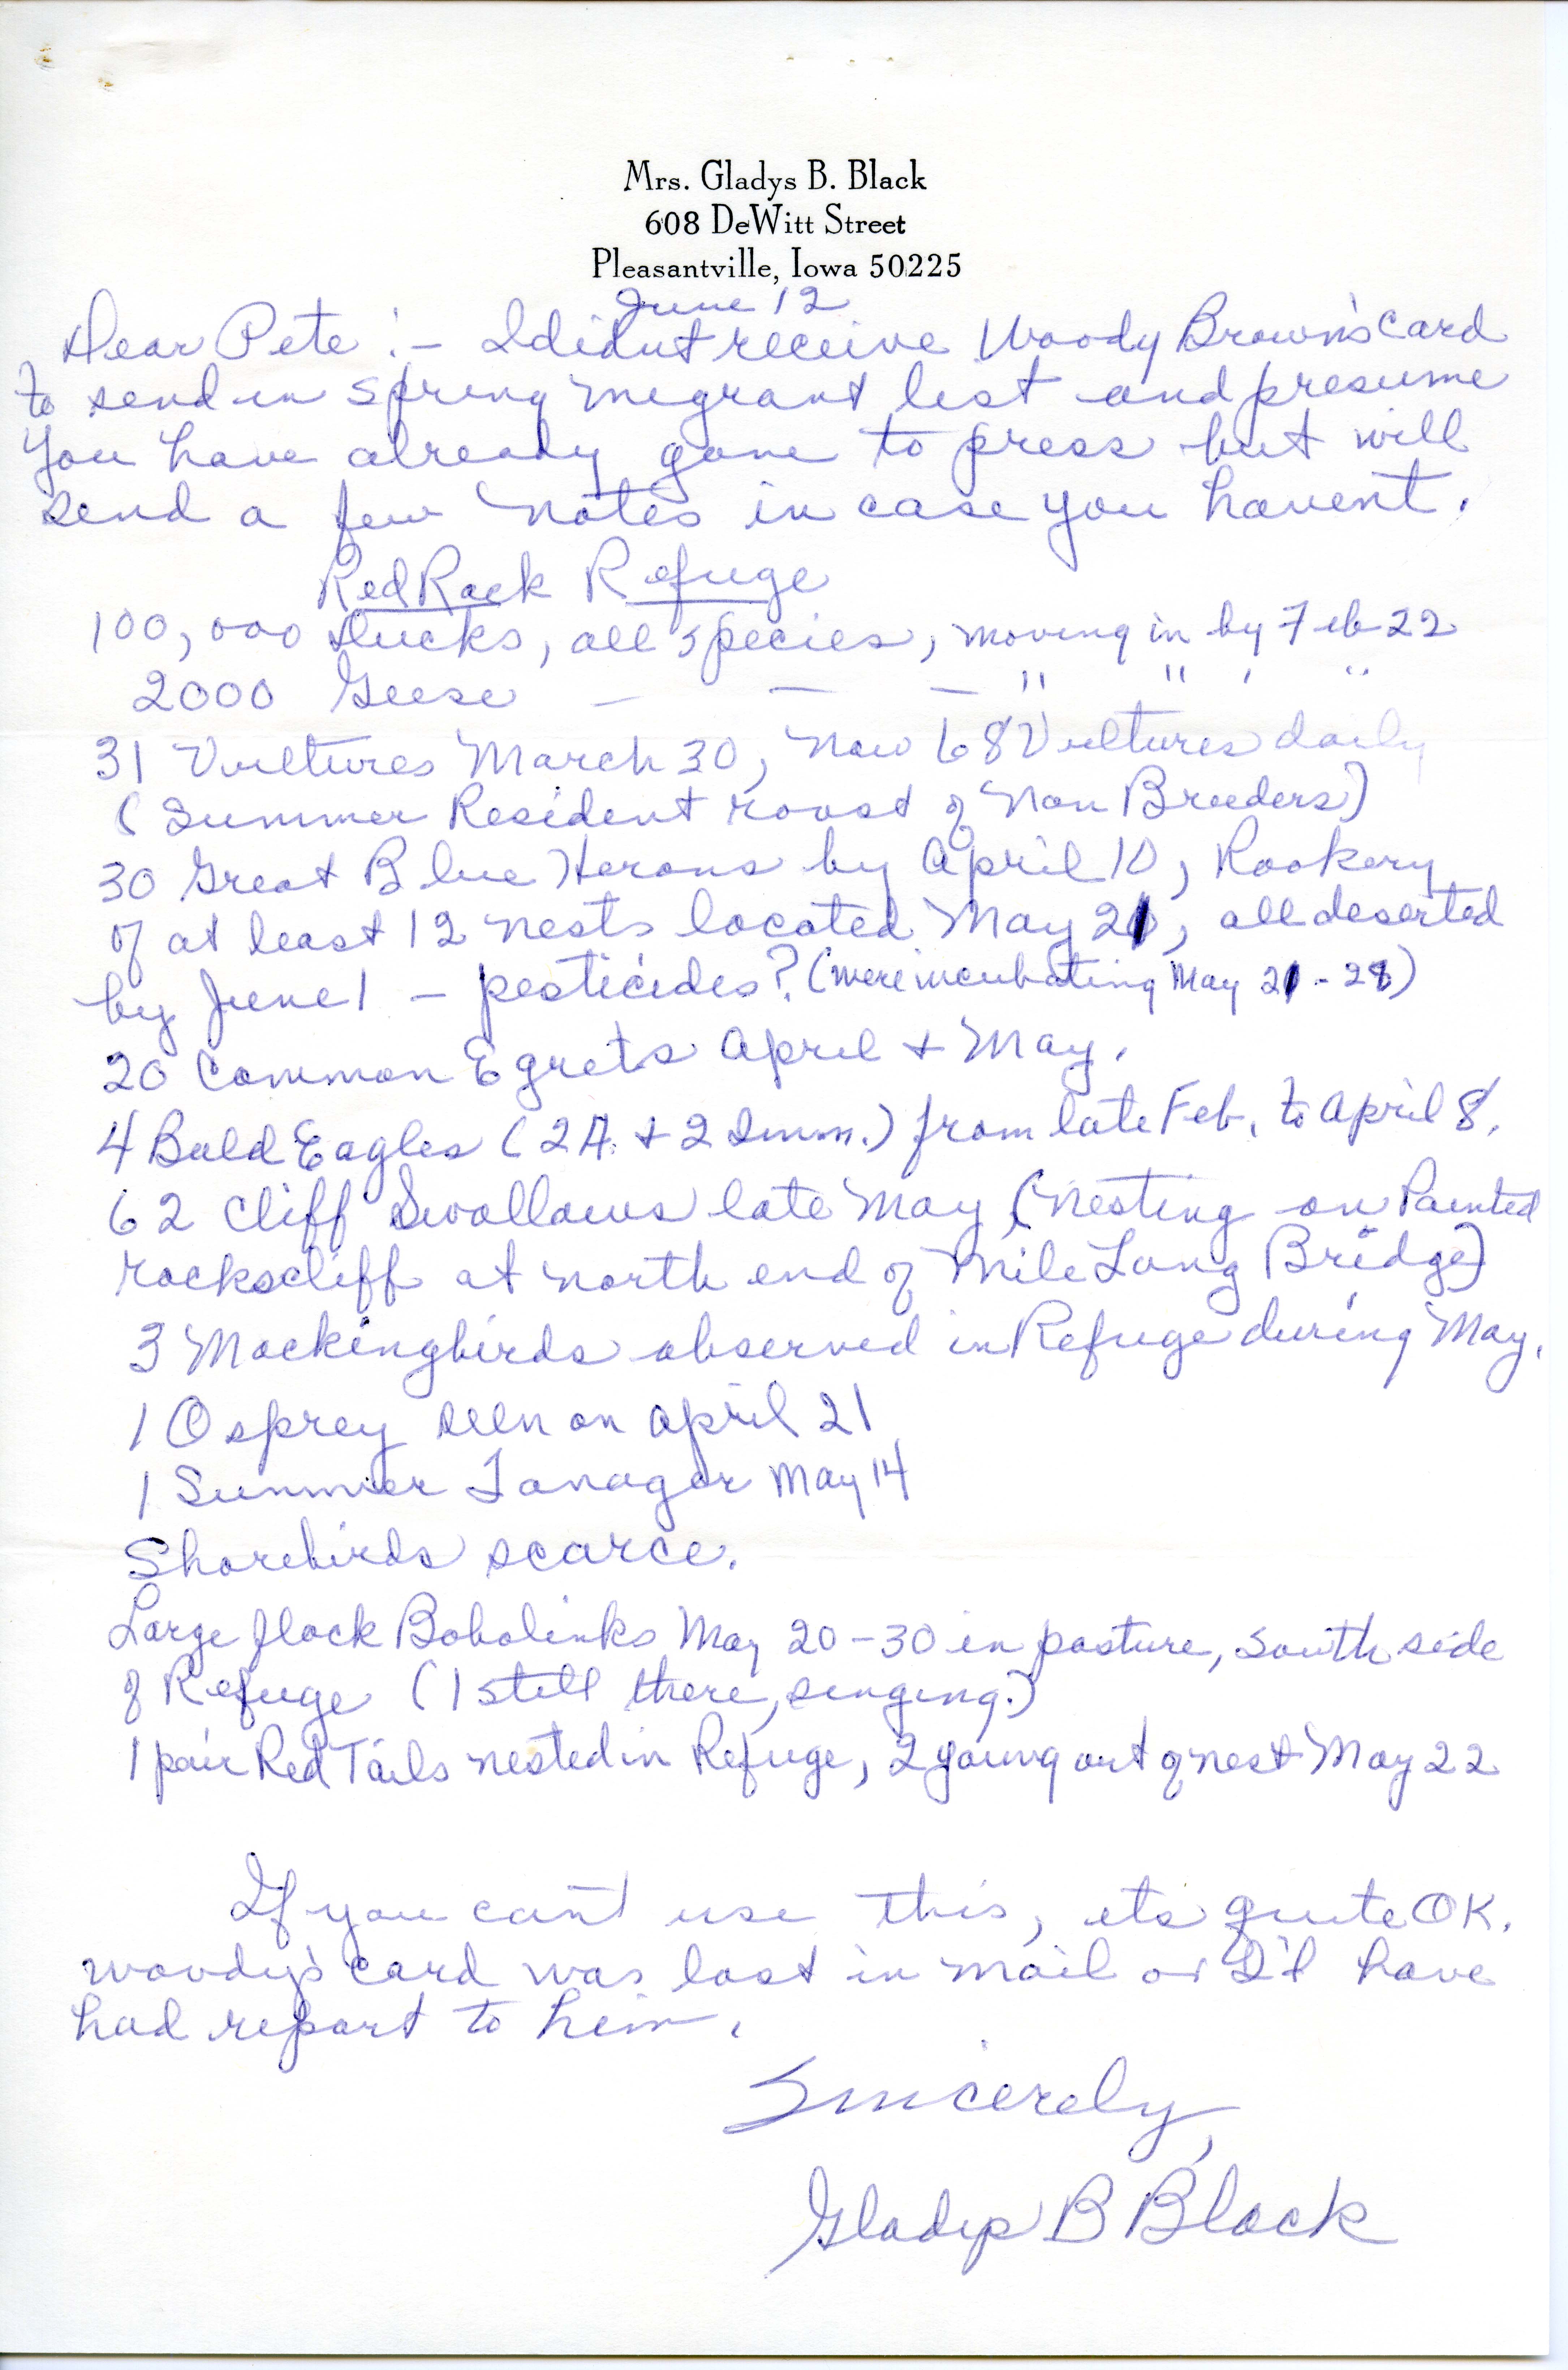 Gladys Black letter to Peter C. Petersen regarding spring migration at Red Rock Refuge, June 12, 1970